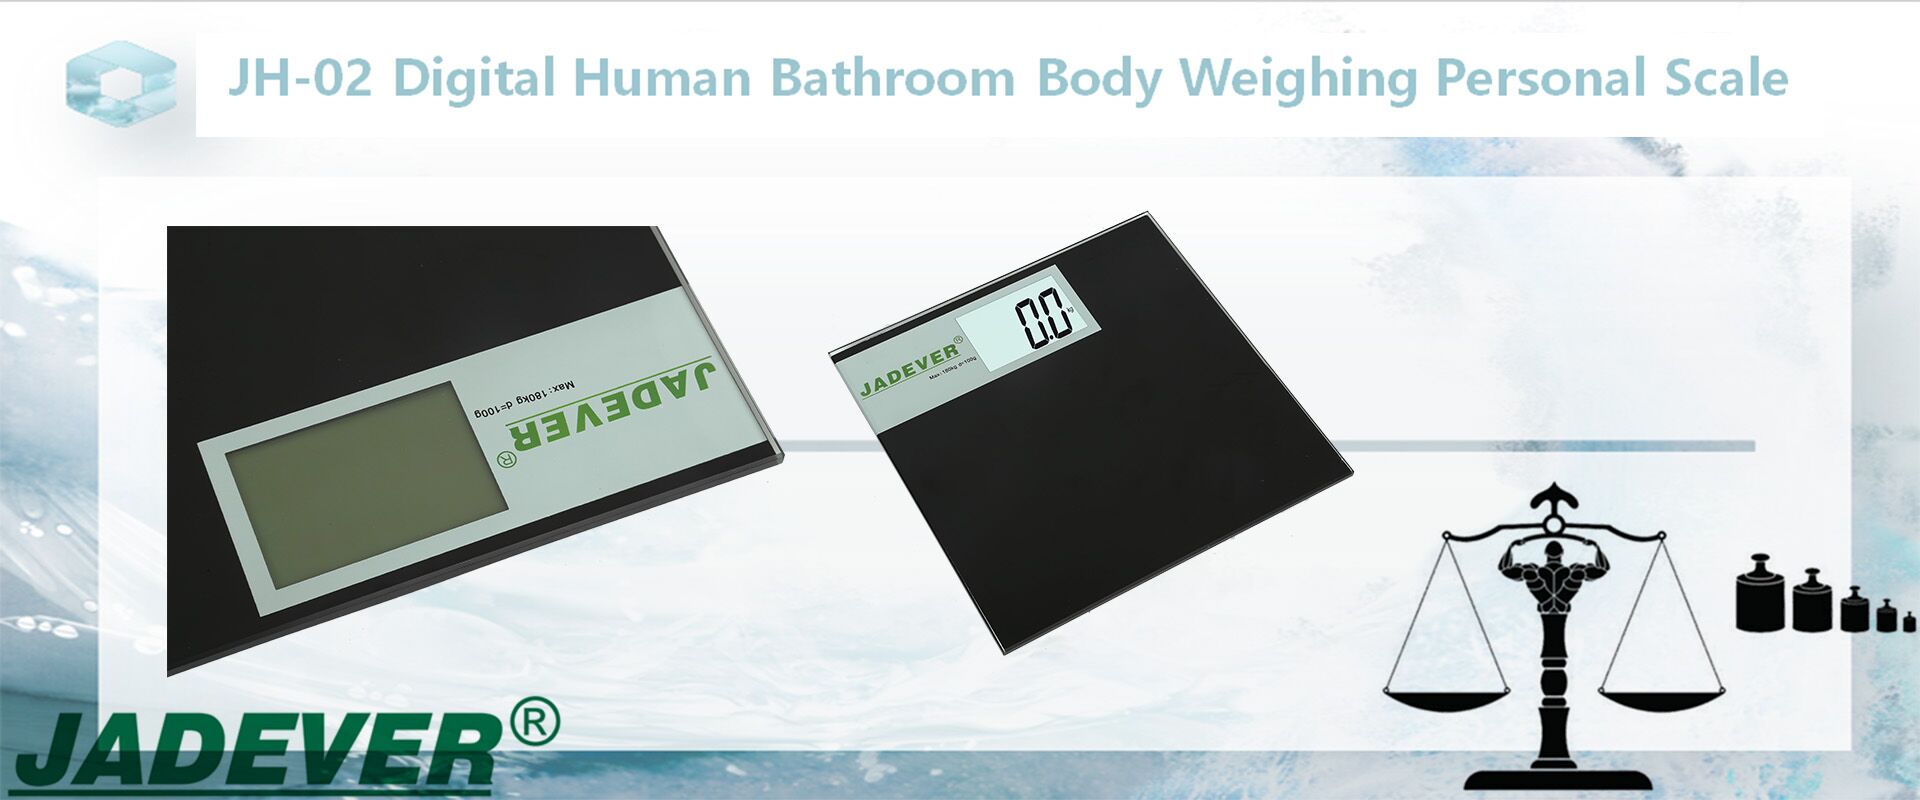 JH-02 Bilancia digitale per la pesatura del corpo umano del bagno
